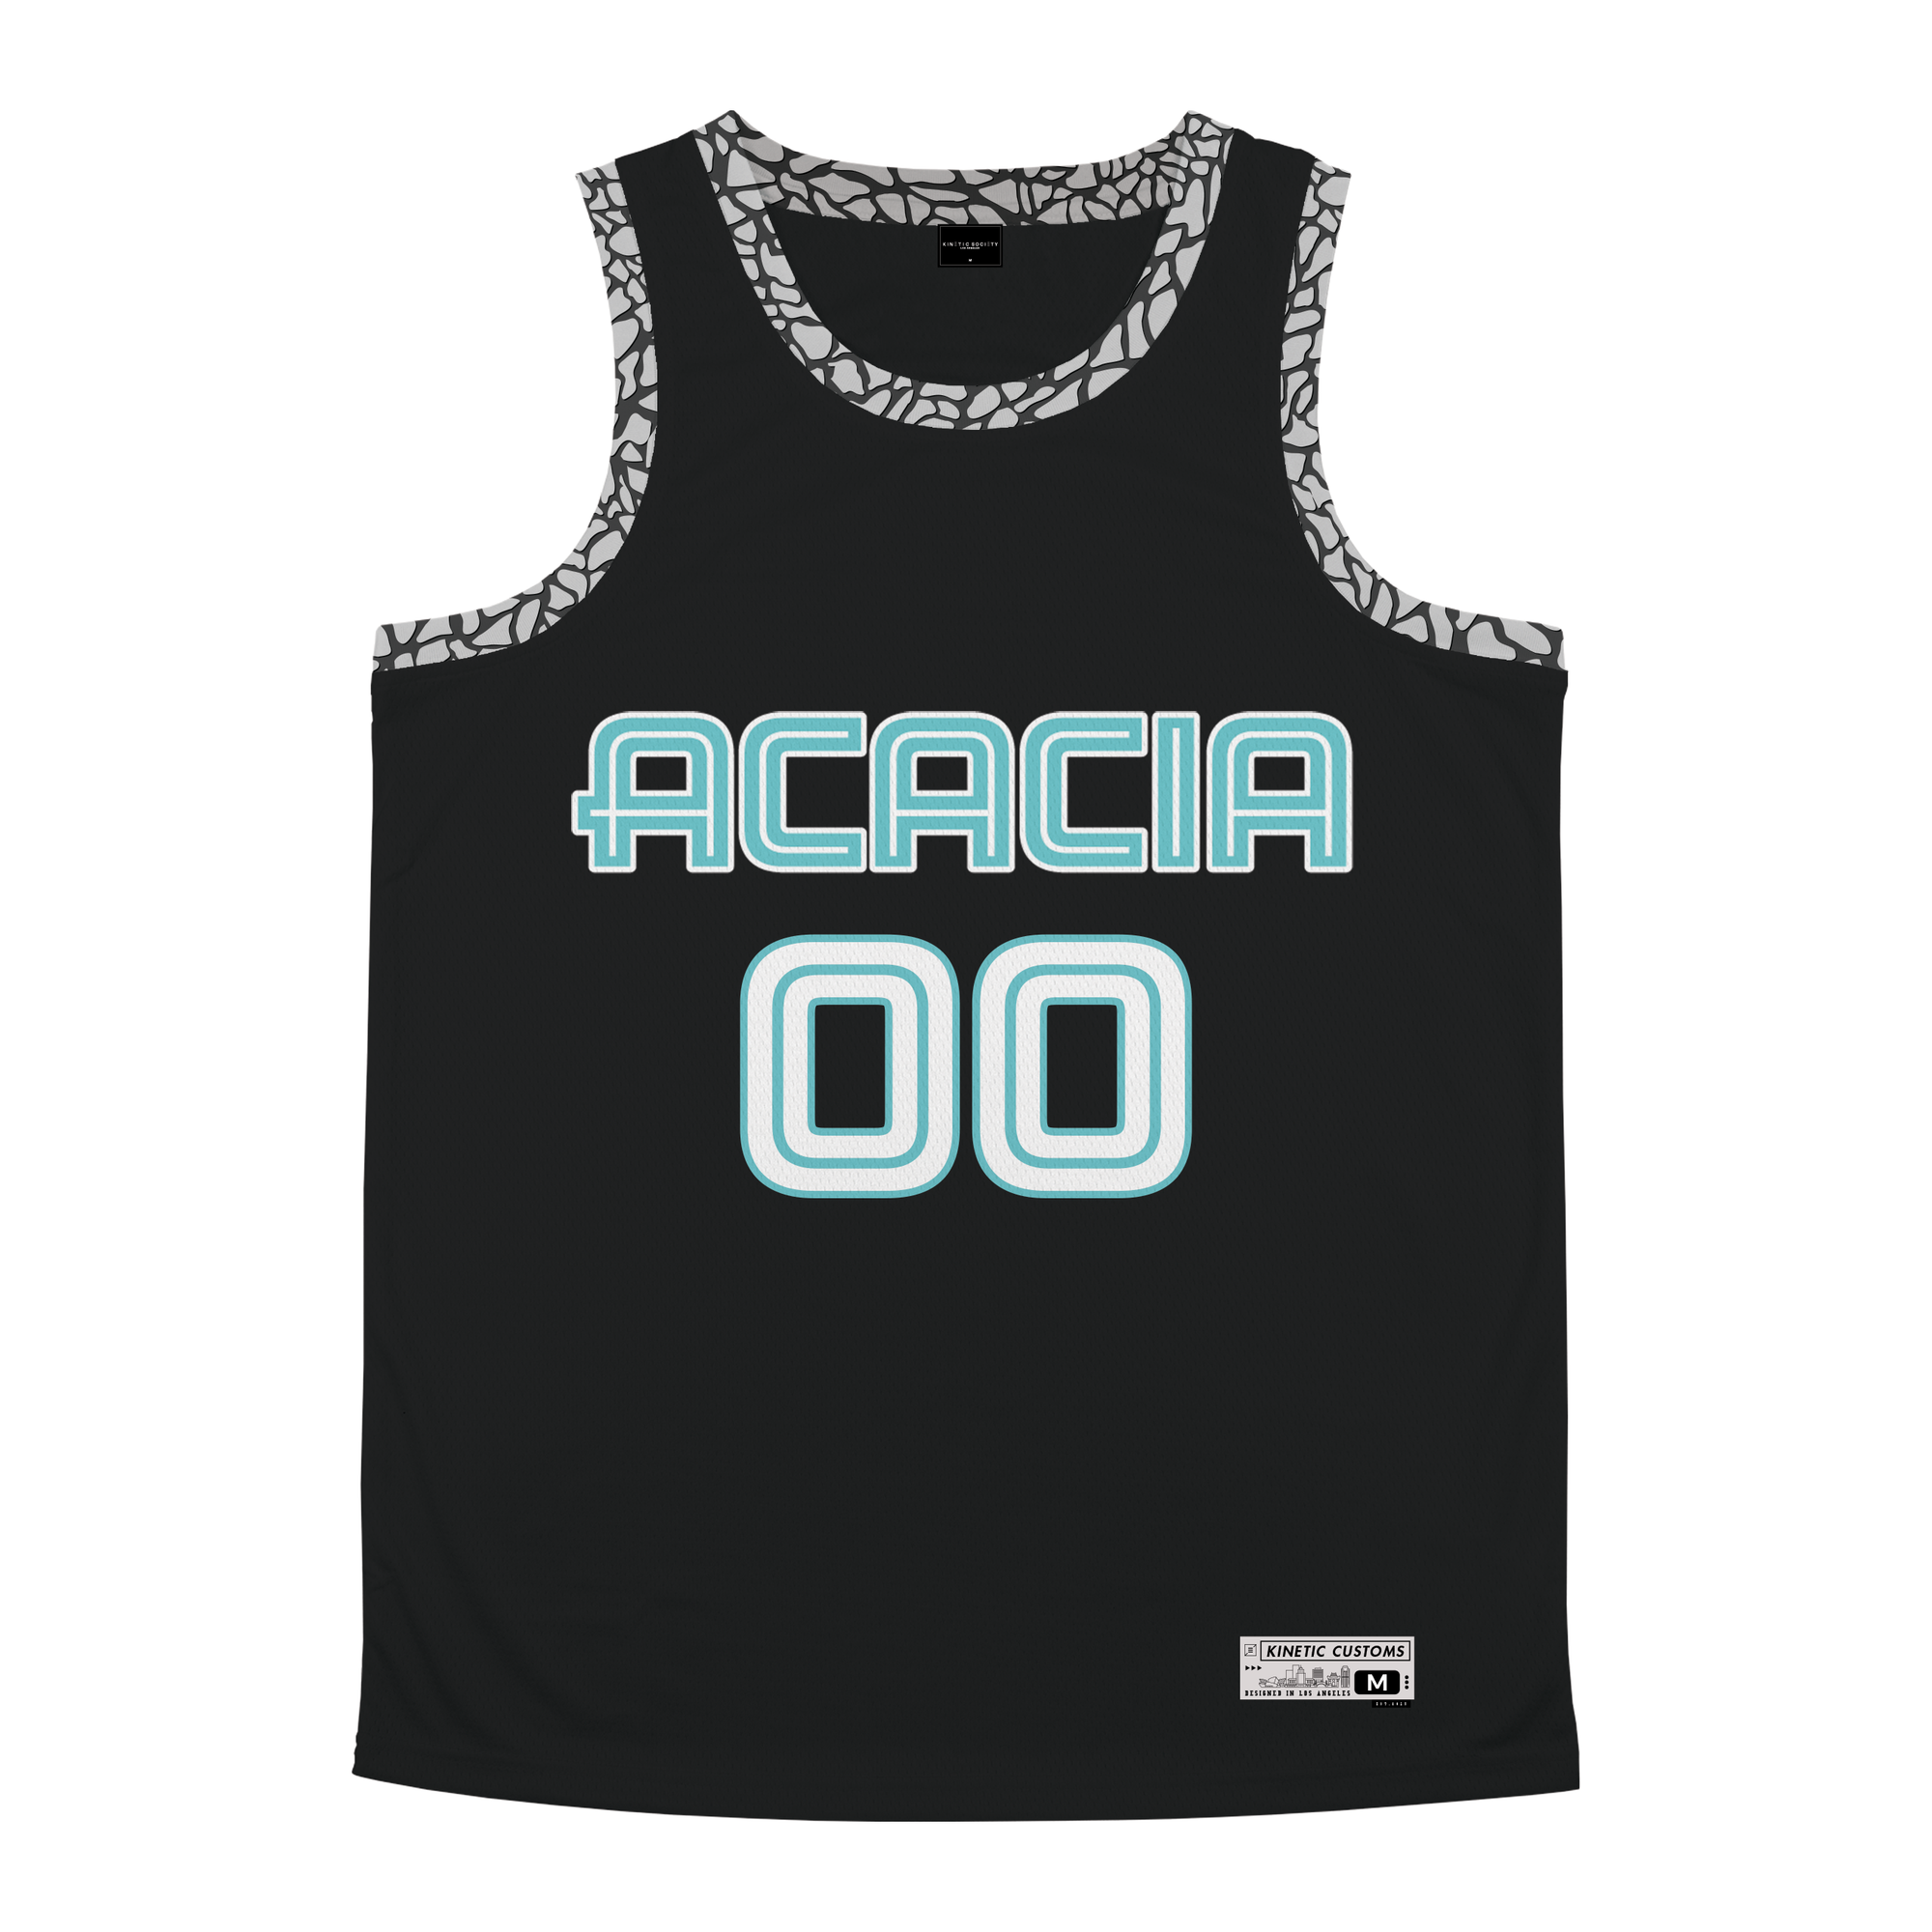 Acacia - Cement Basketball Jersey